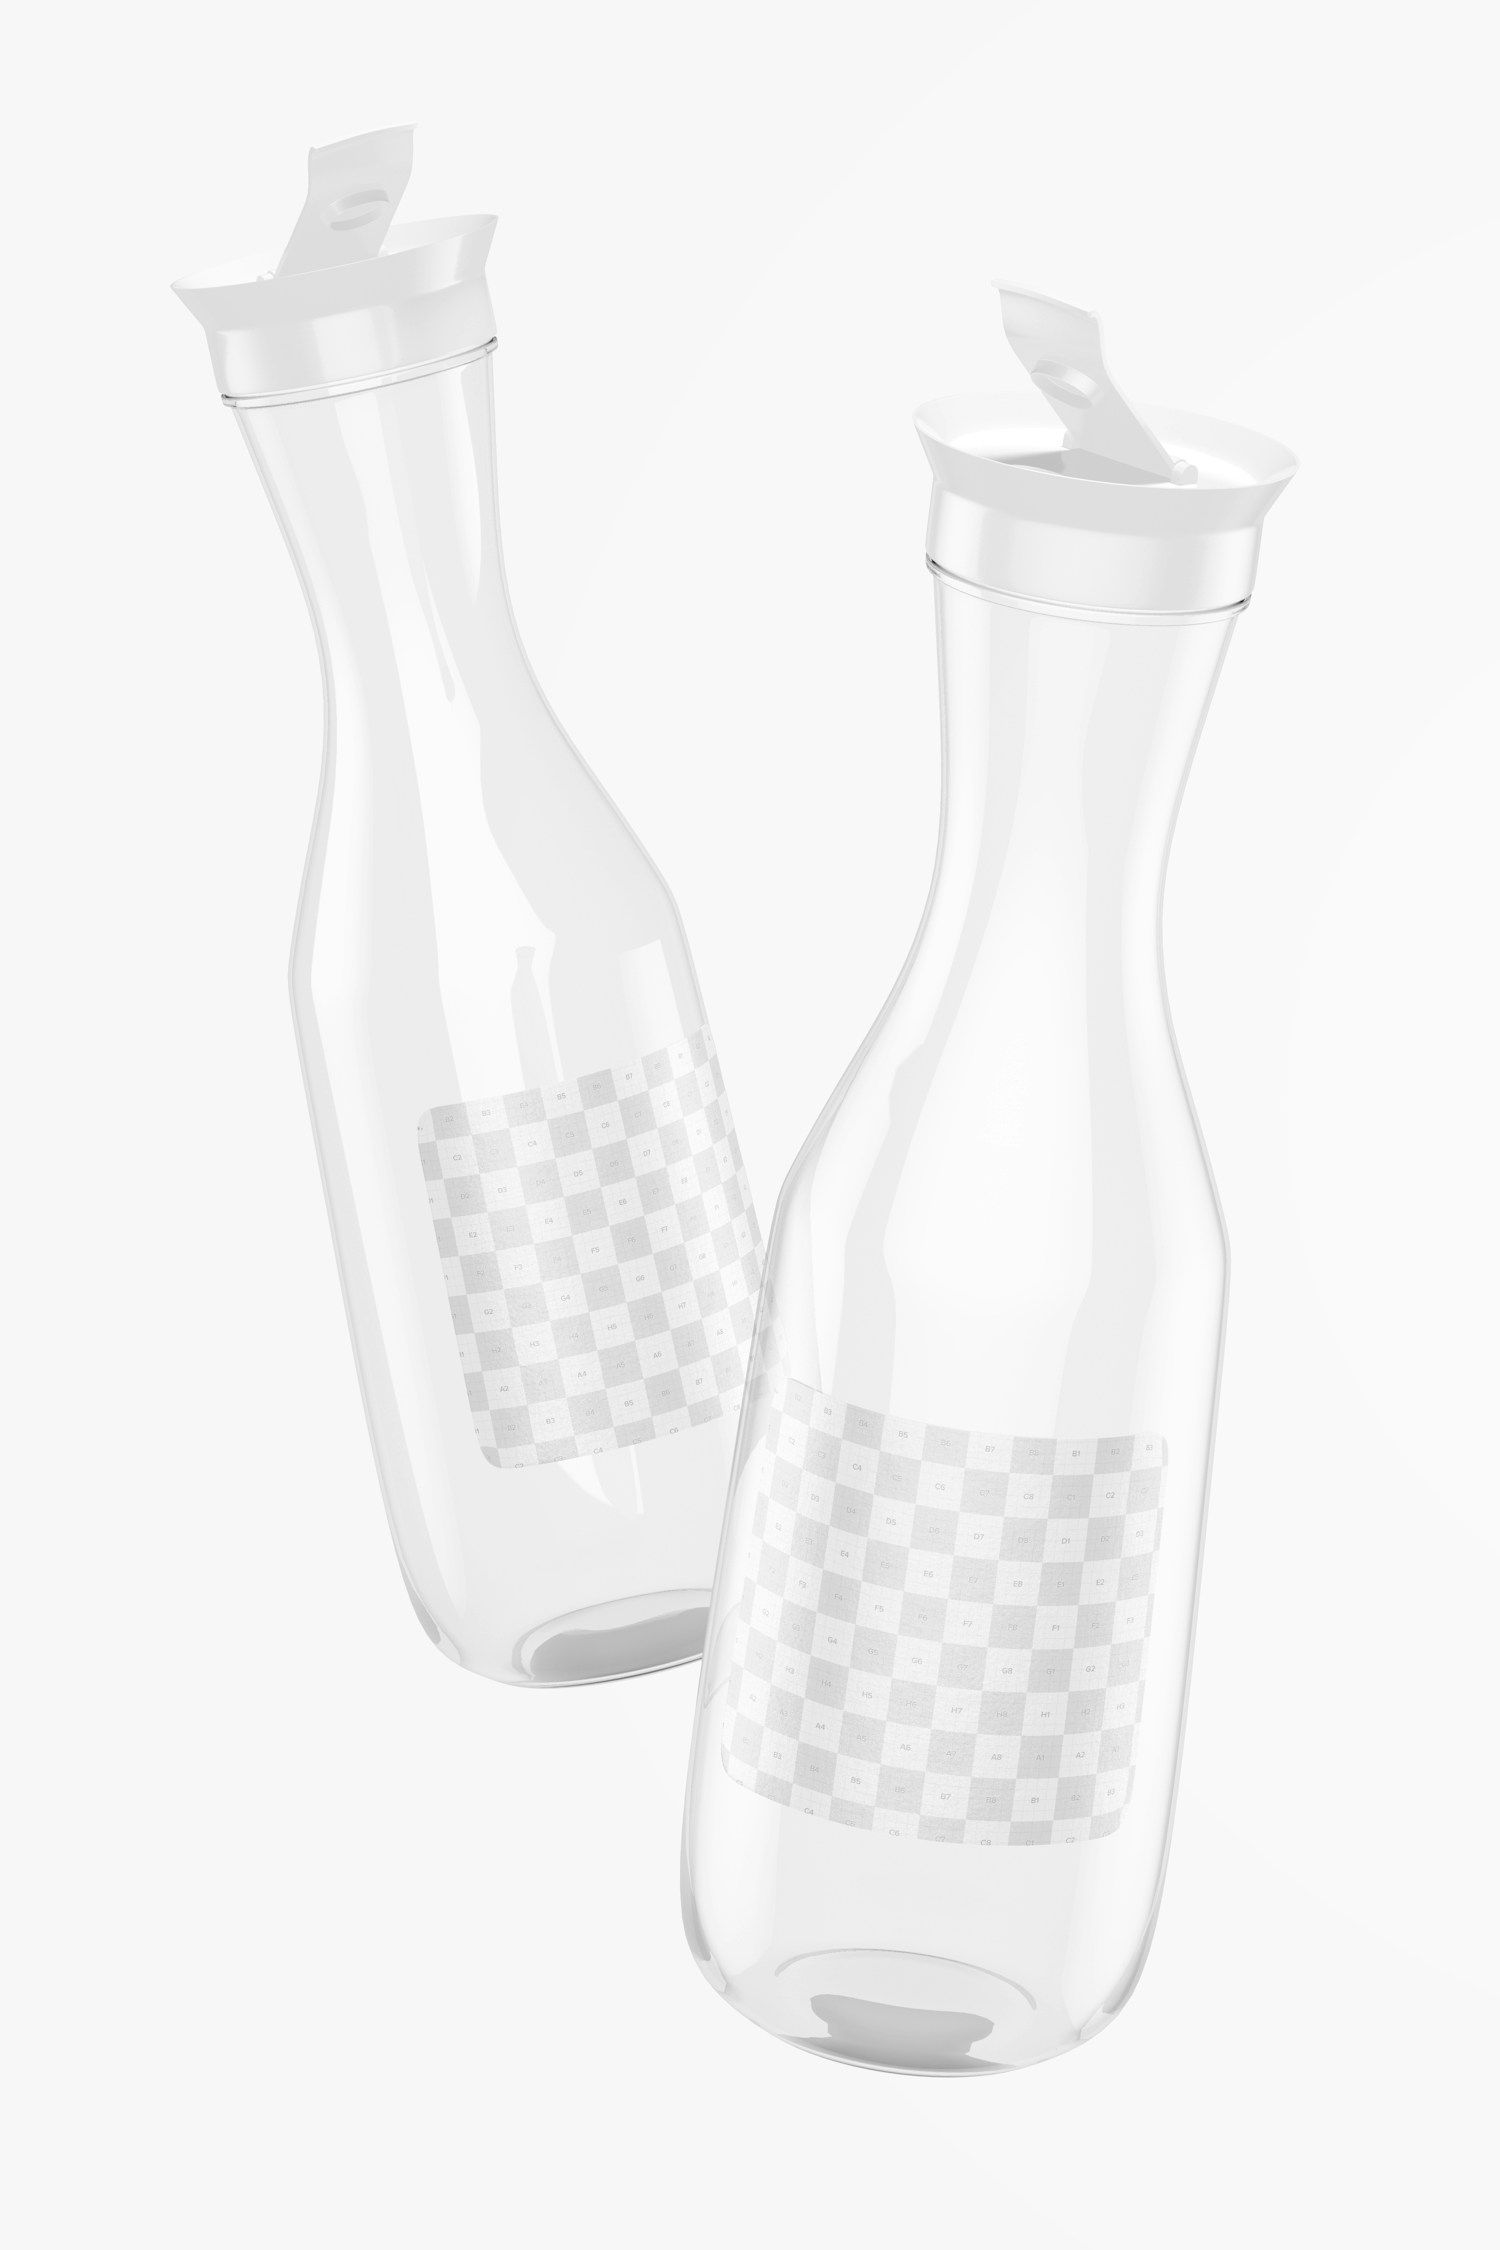 Maqueta de Botellas Plásticas de Agua con Tapa Abatible, Flotando